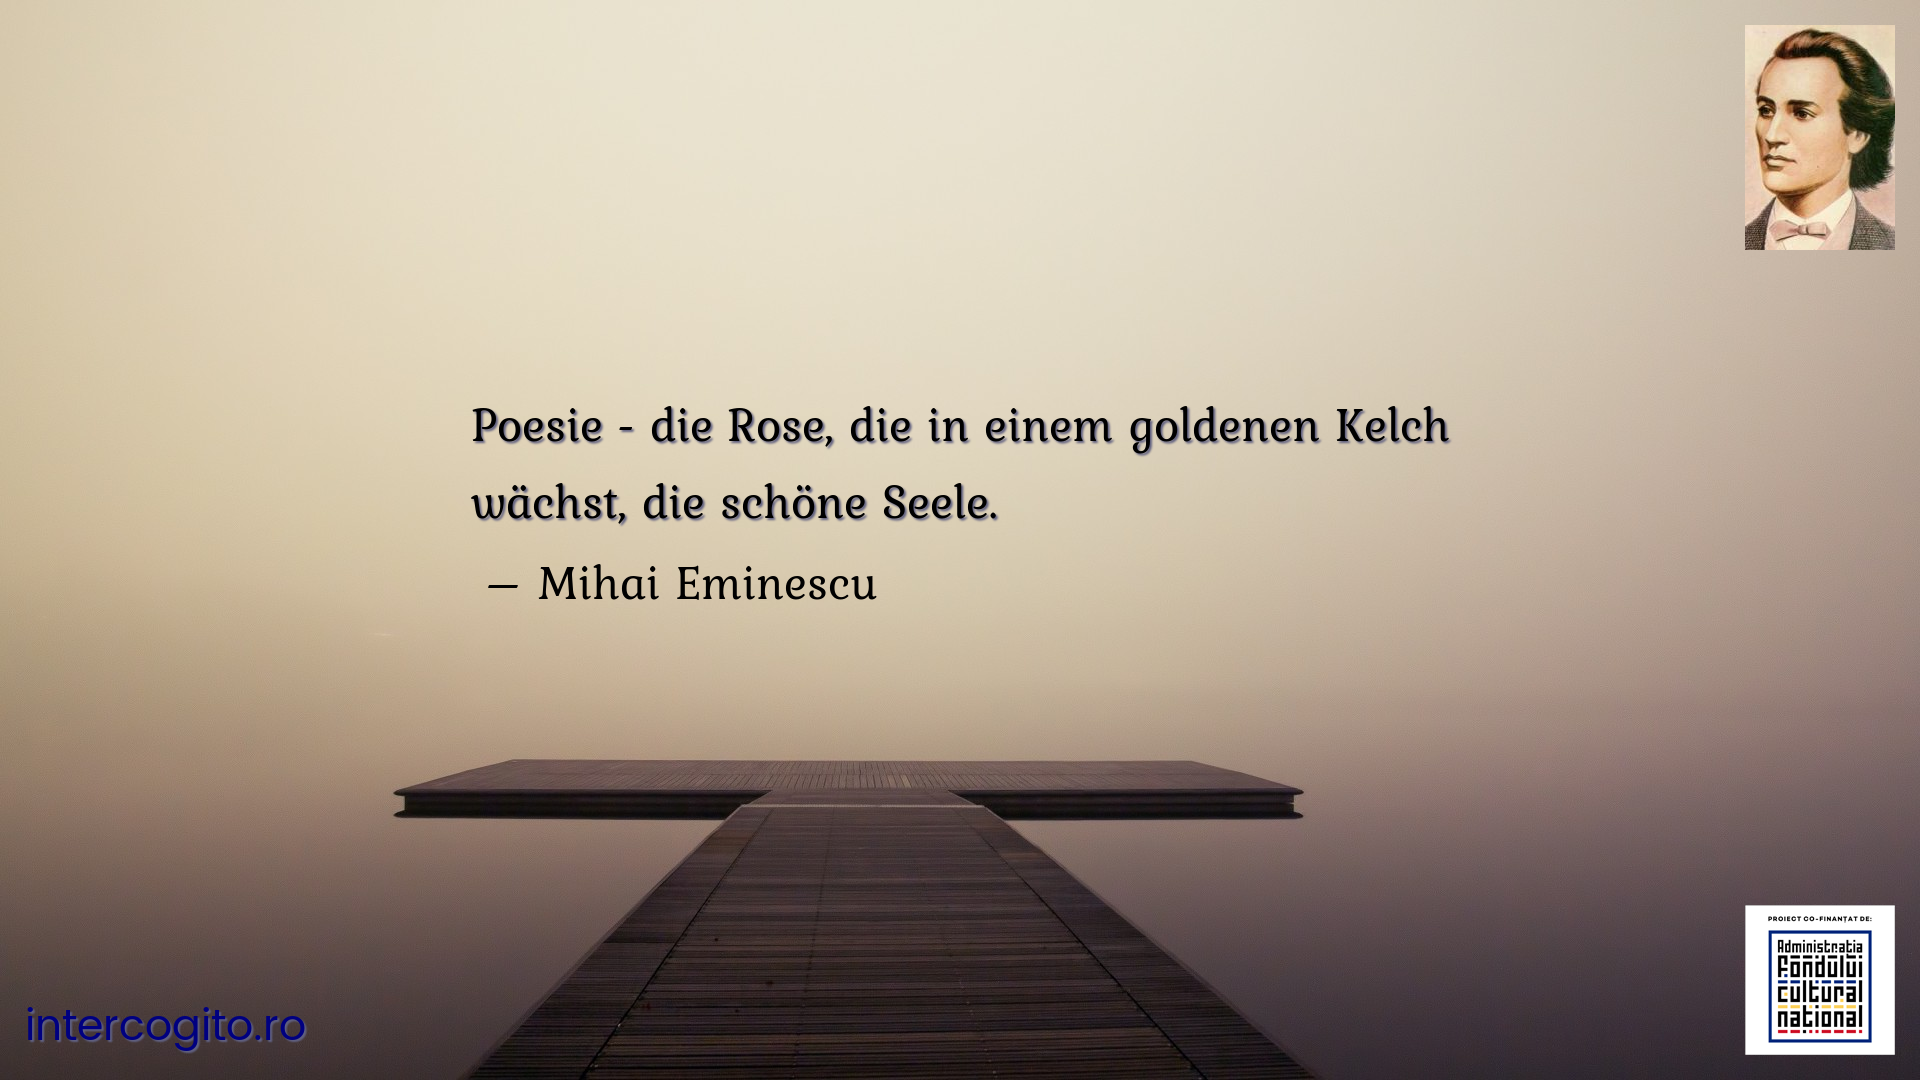 Poesie - die Rose, die in einem goldenen Kelch wächst, die schöne Seele. 